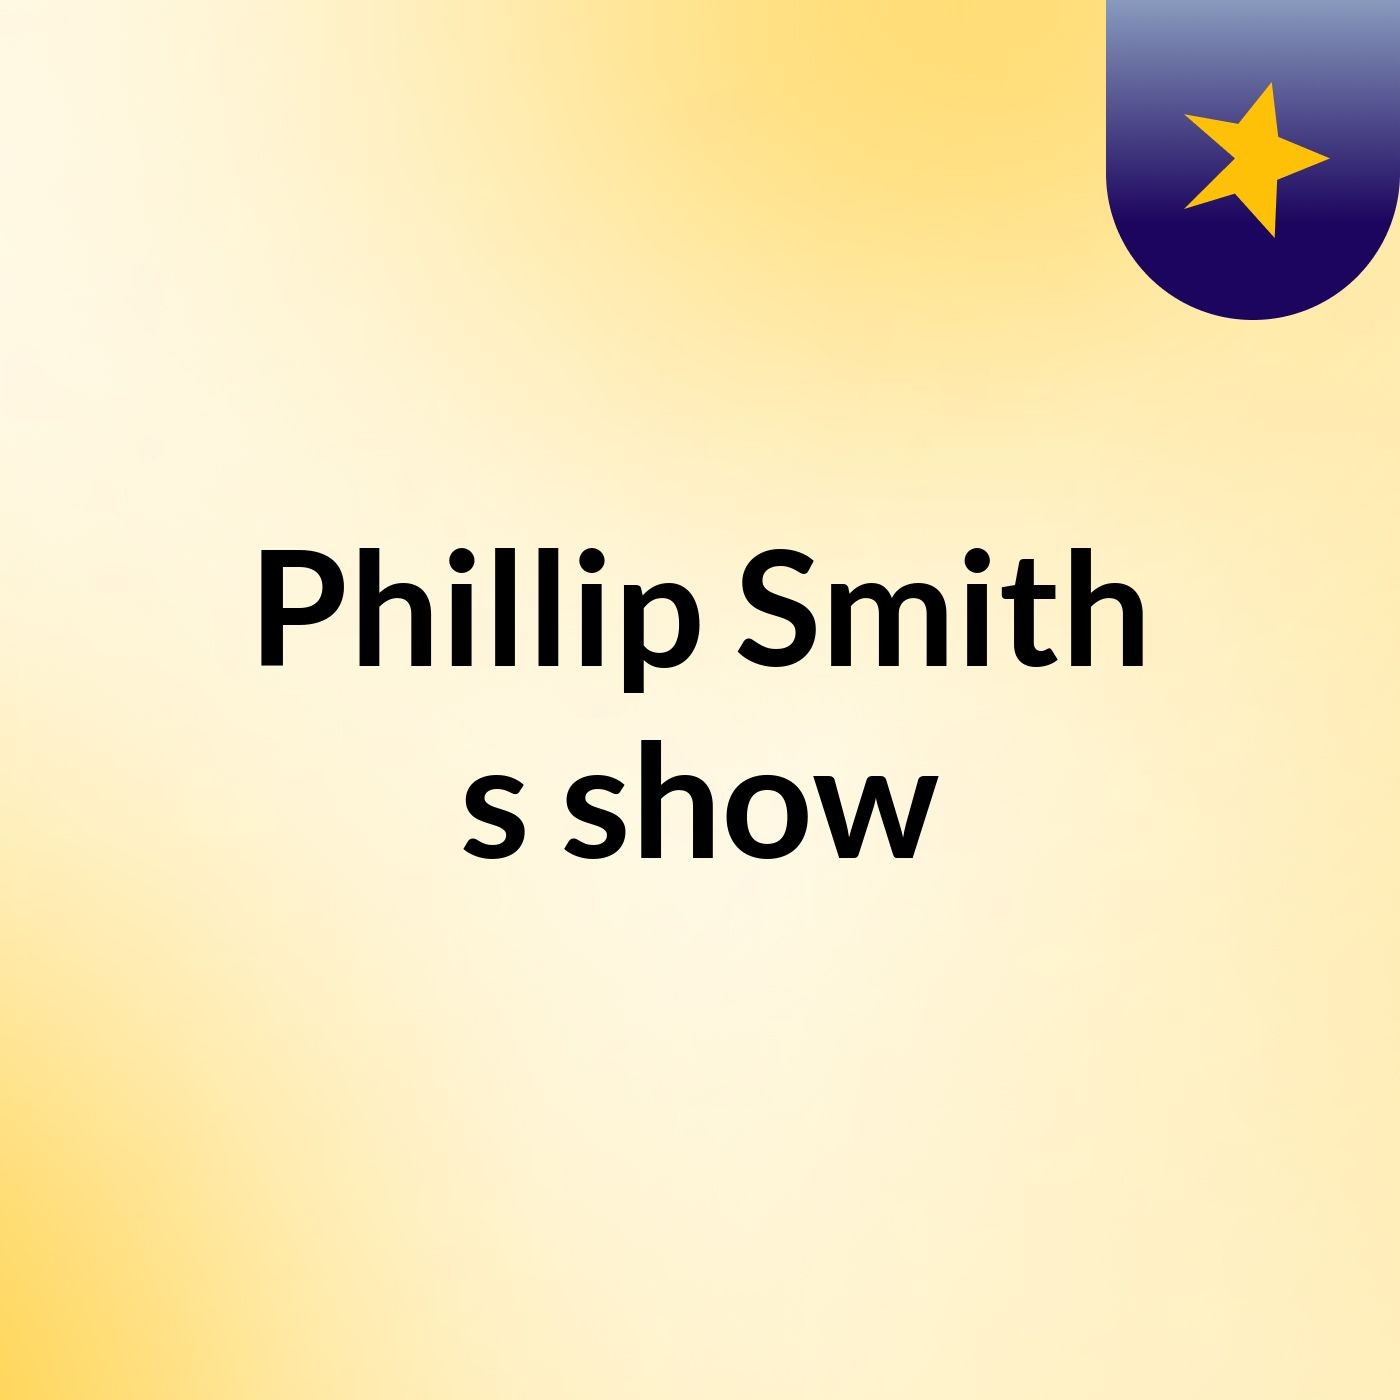 Phillip Smith's show